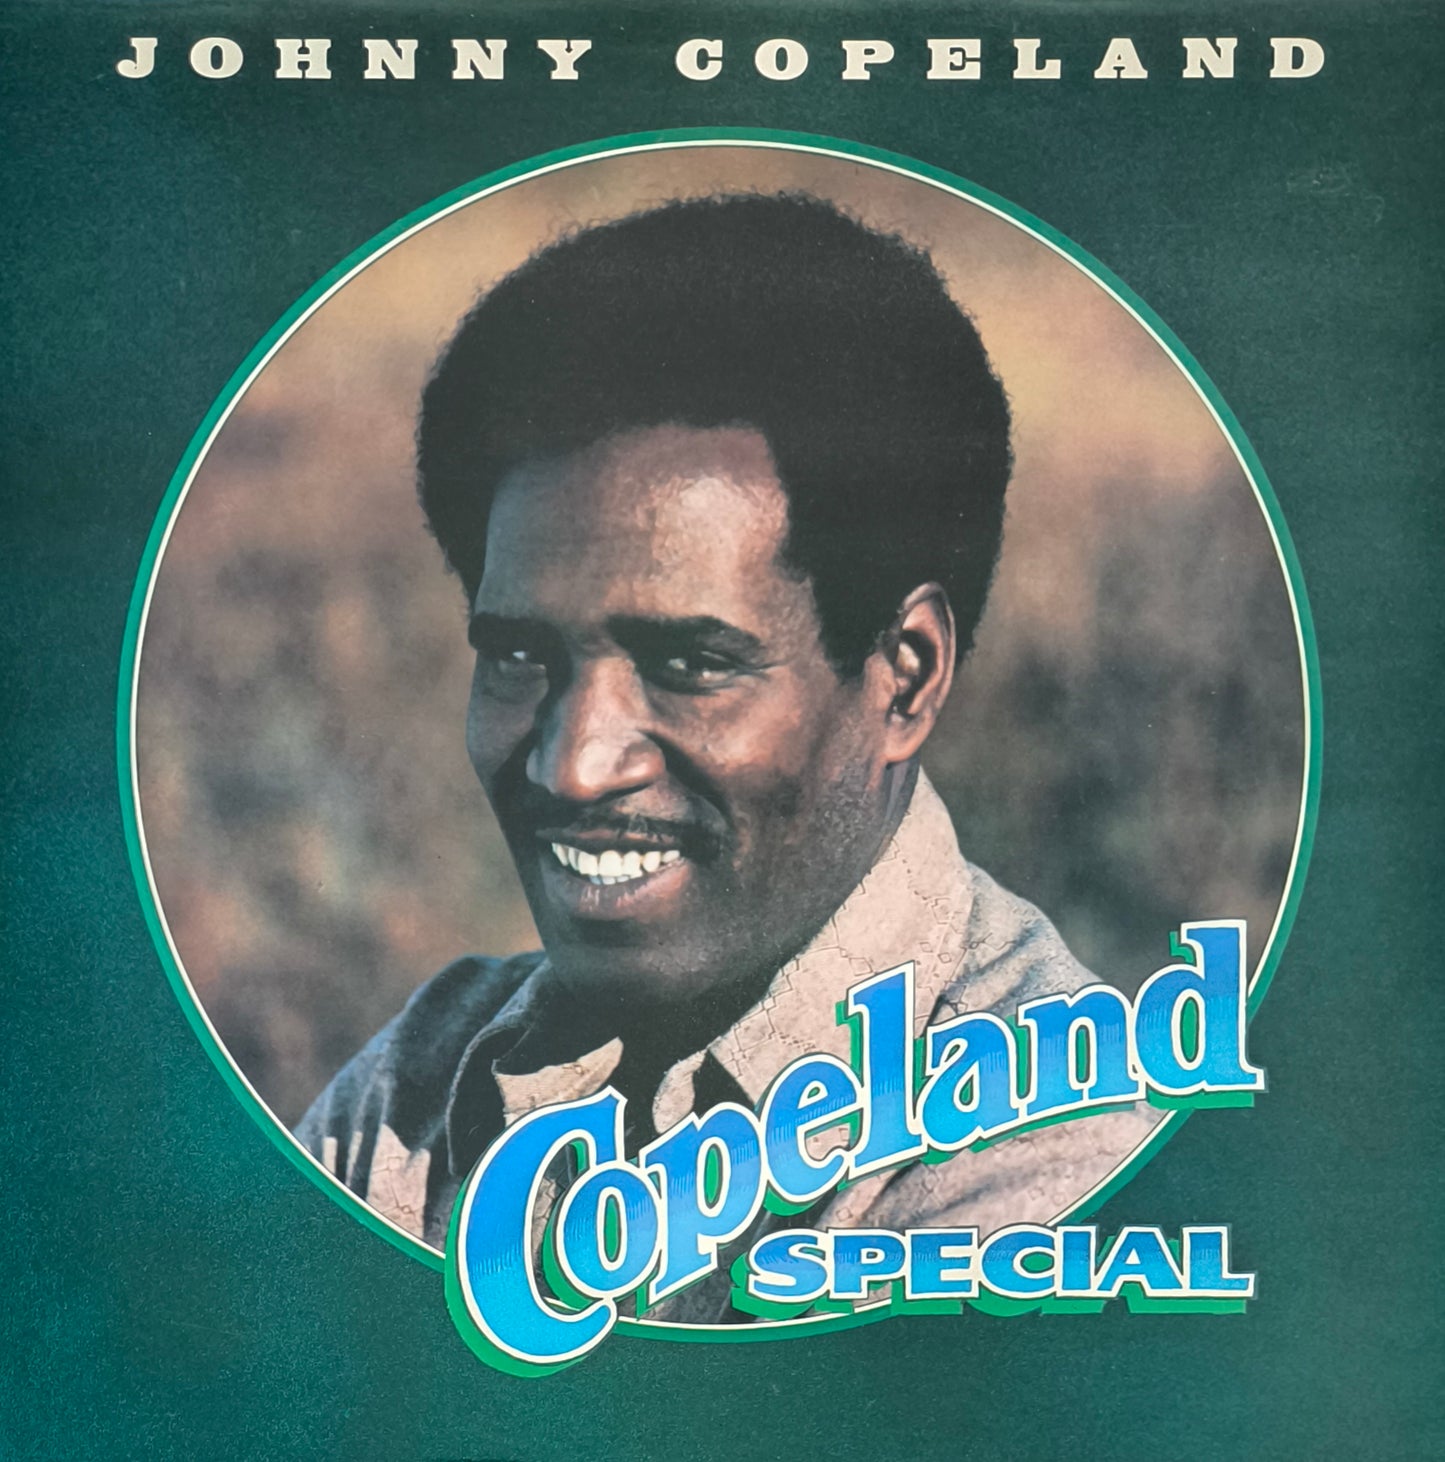 JOHNNY COPELAND - Copeland Special